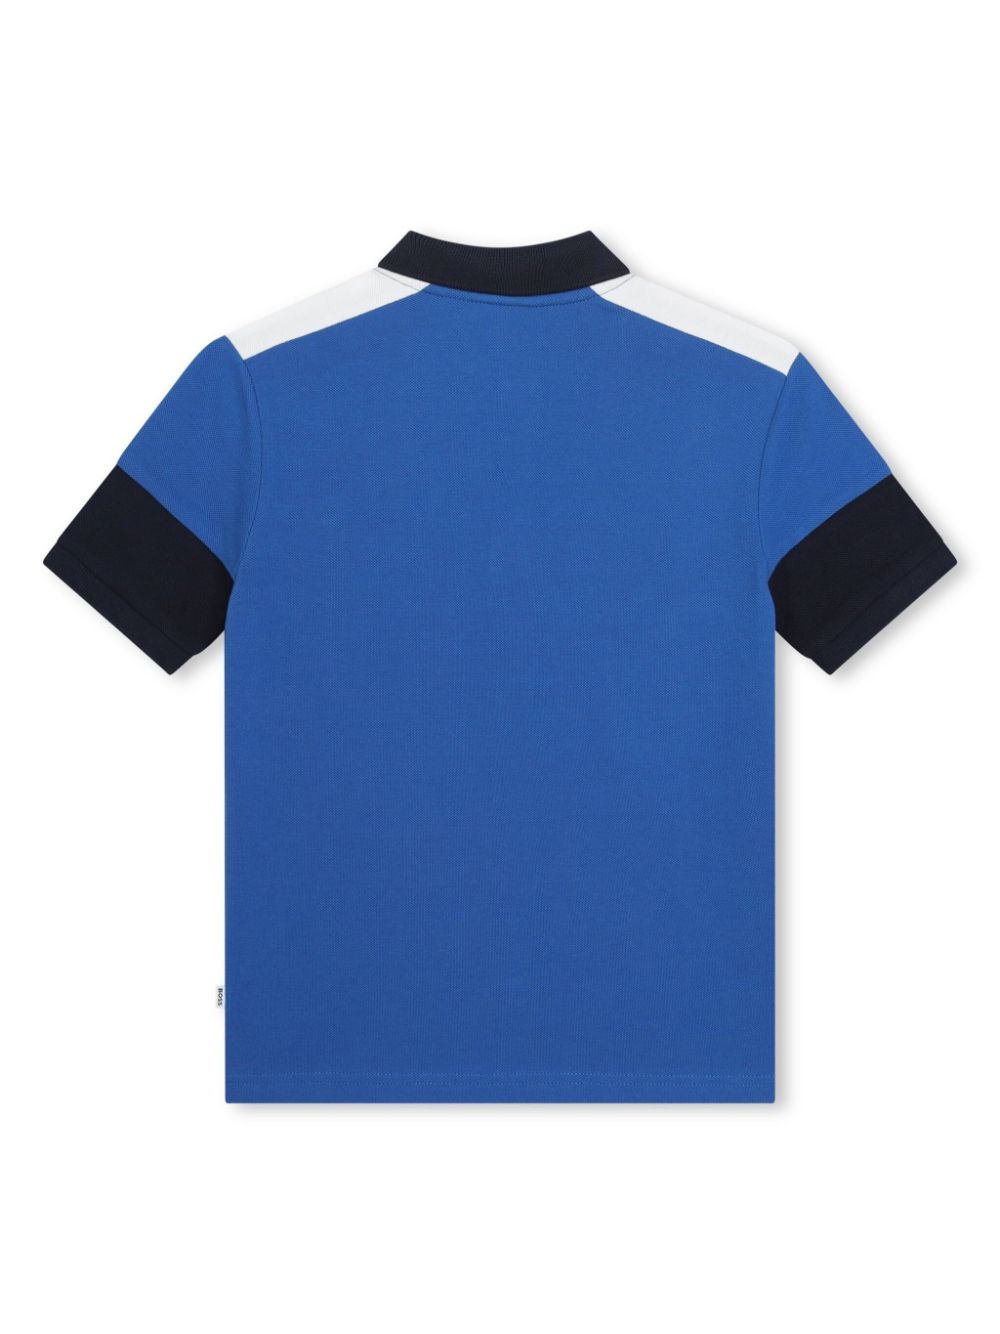 Completo sportivo blu per bambino con logo